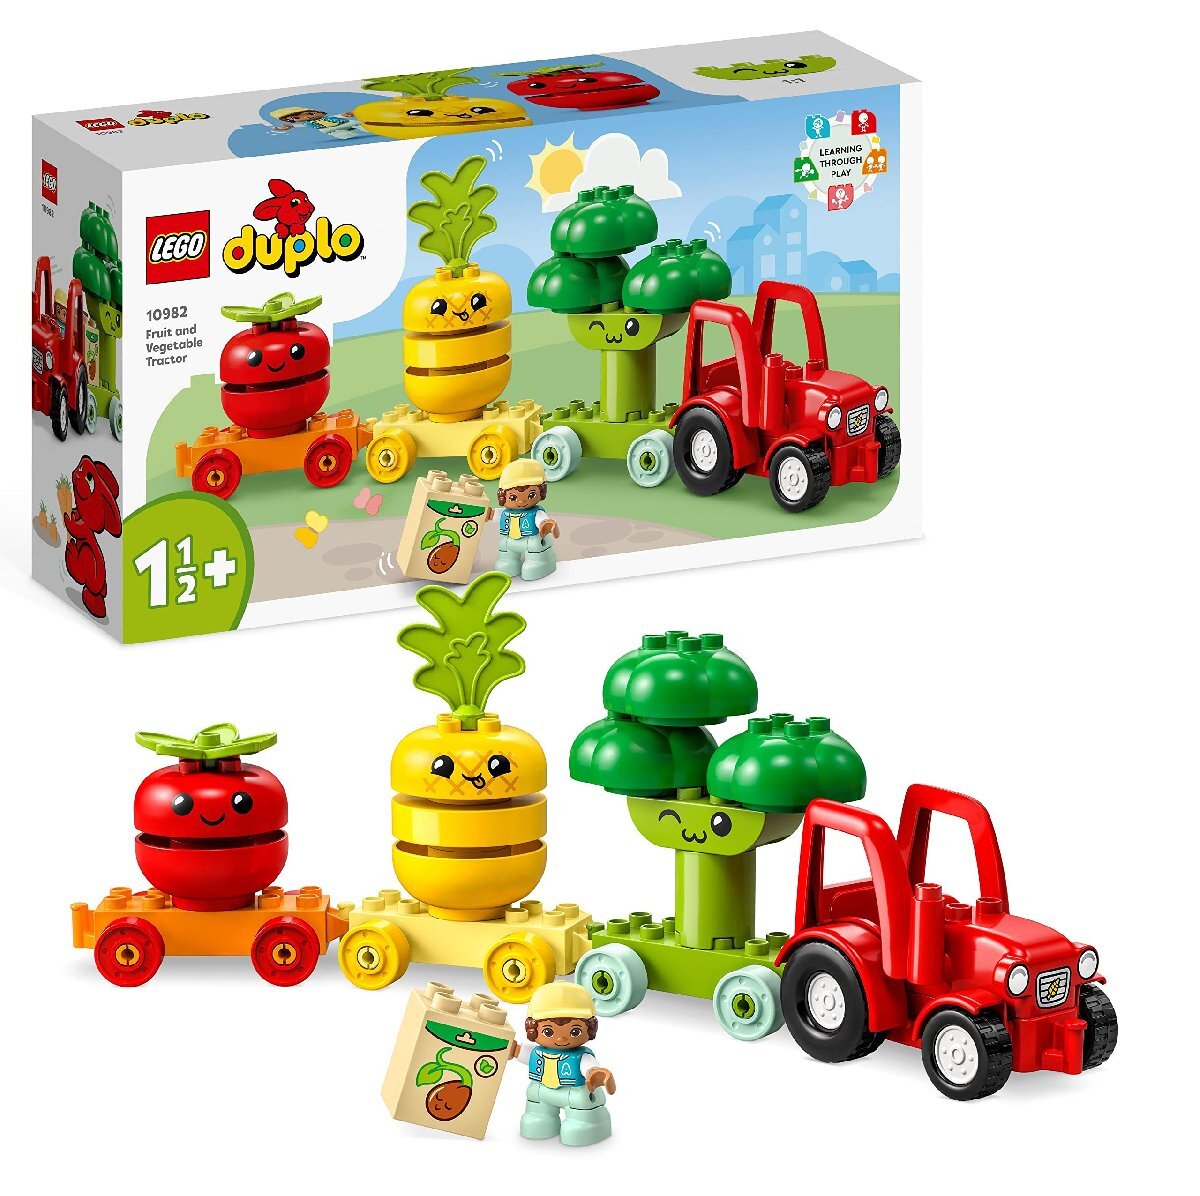 レゴ(LEGO) デュプロ はじめてのデュプロ やさいのトラクター 10982 おもちゃ ブロック プレゼント幼児 赤ちゃん ごっこ遊び 乗り物 の_画像1